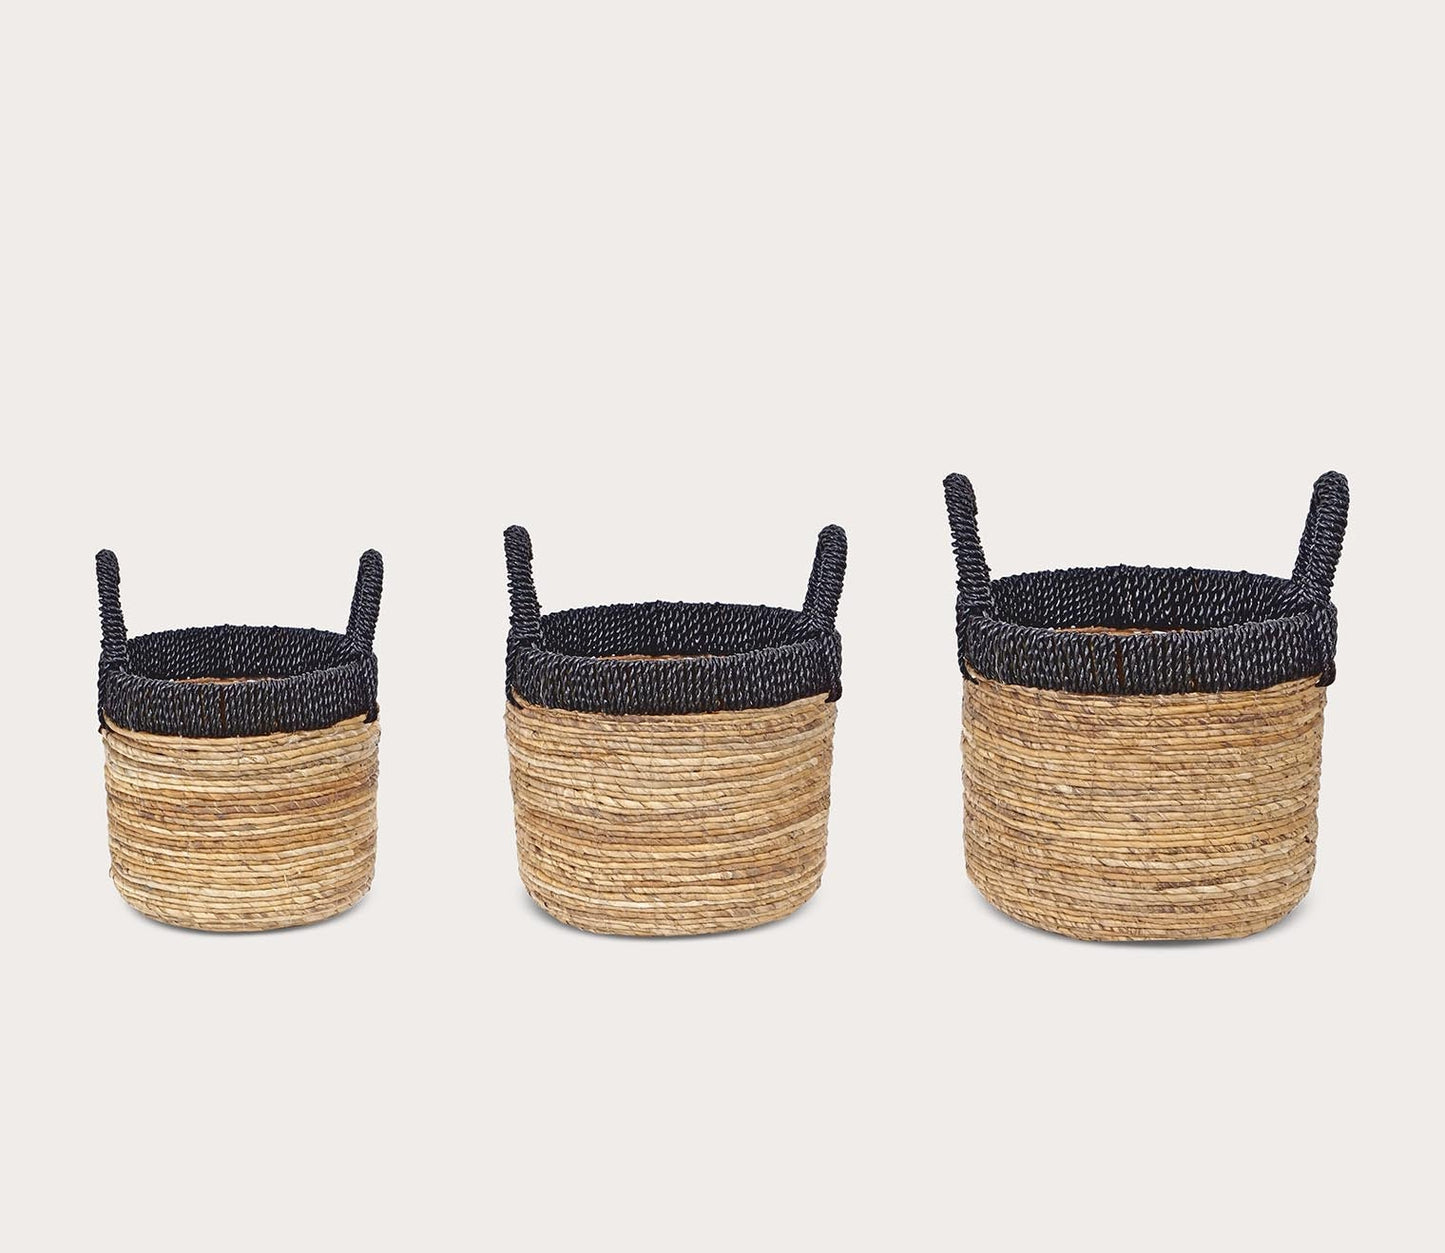 Holset Baskets Set of 3 by Elk Home